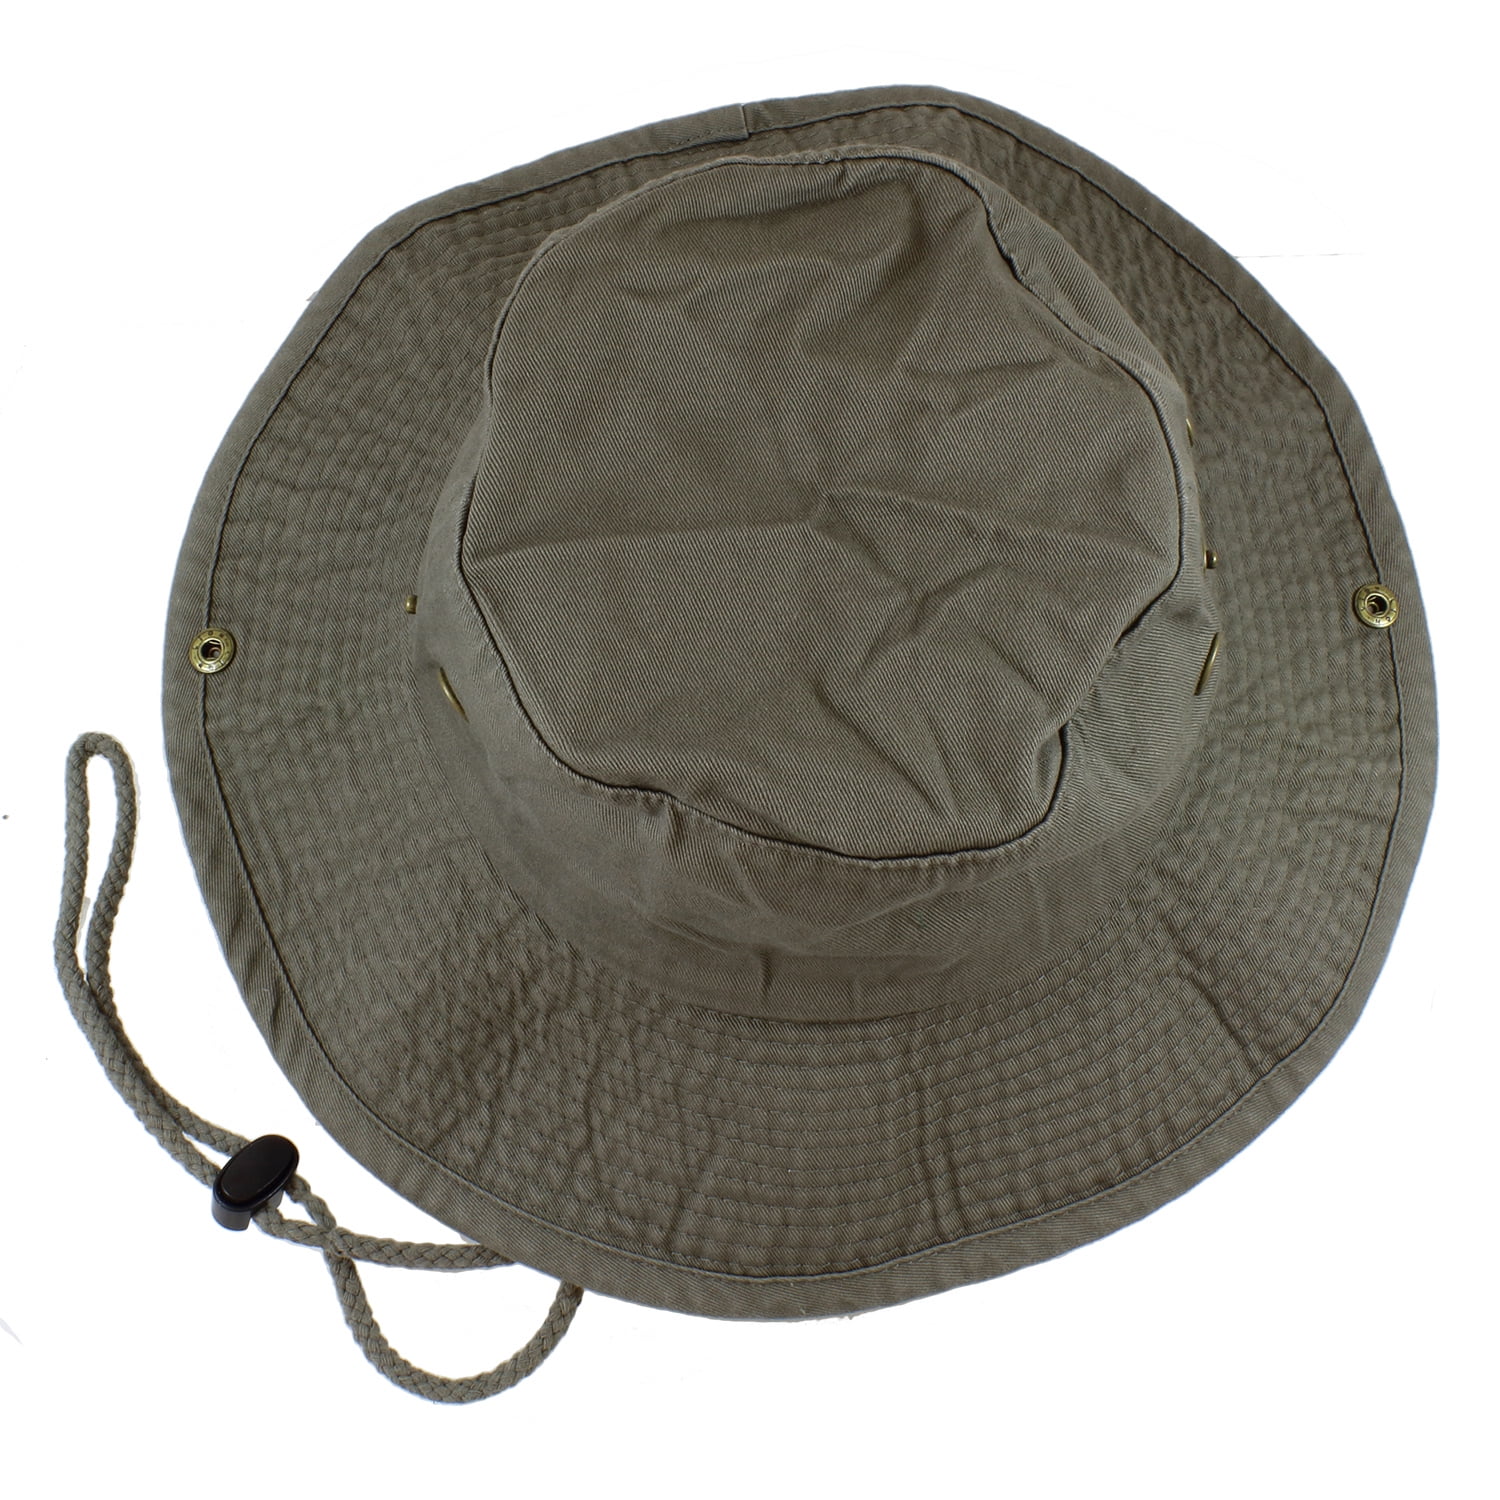 Gelante 100% Cotton Stone-Washed Safari Booney Sun Hats 